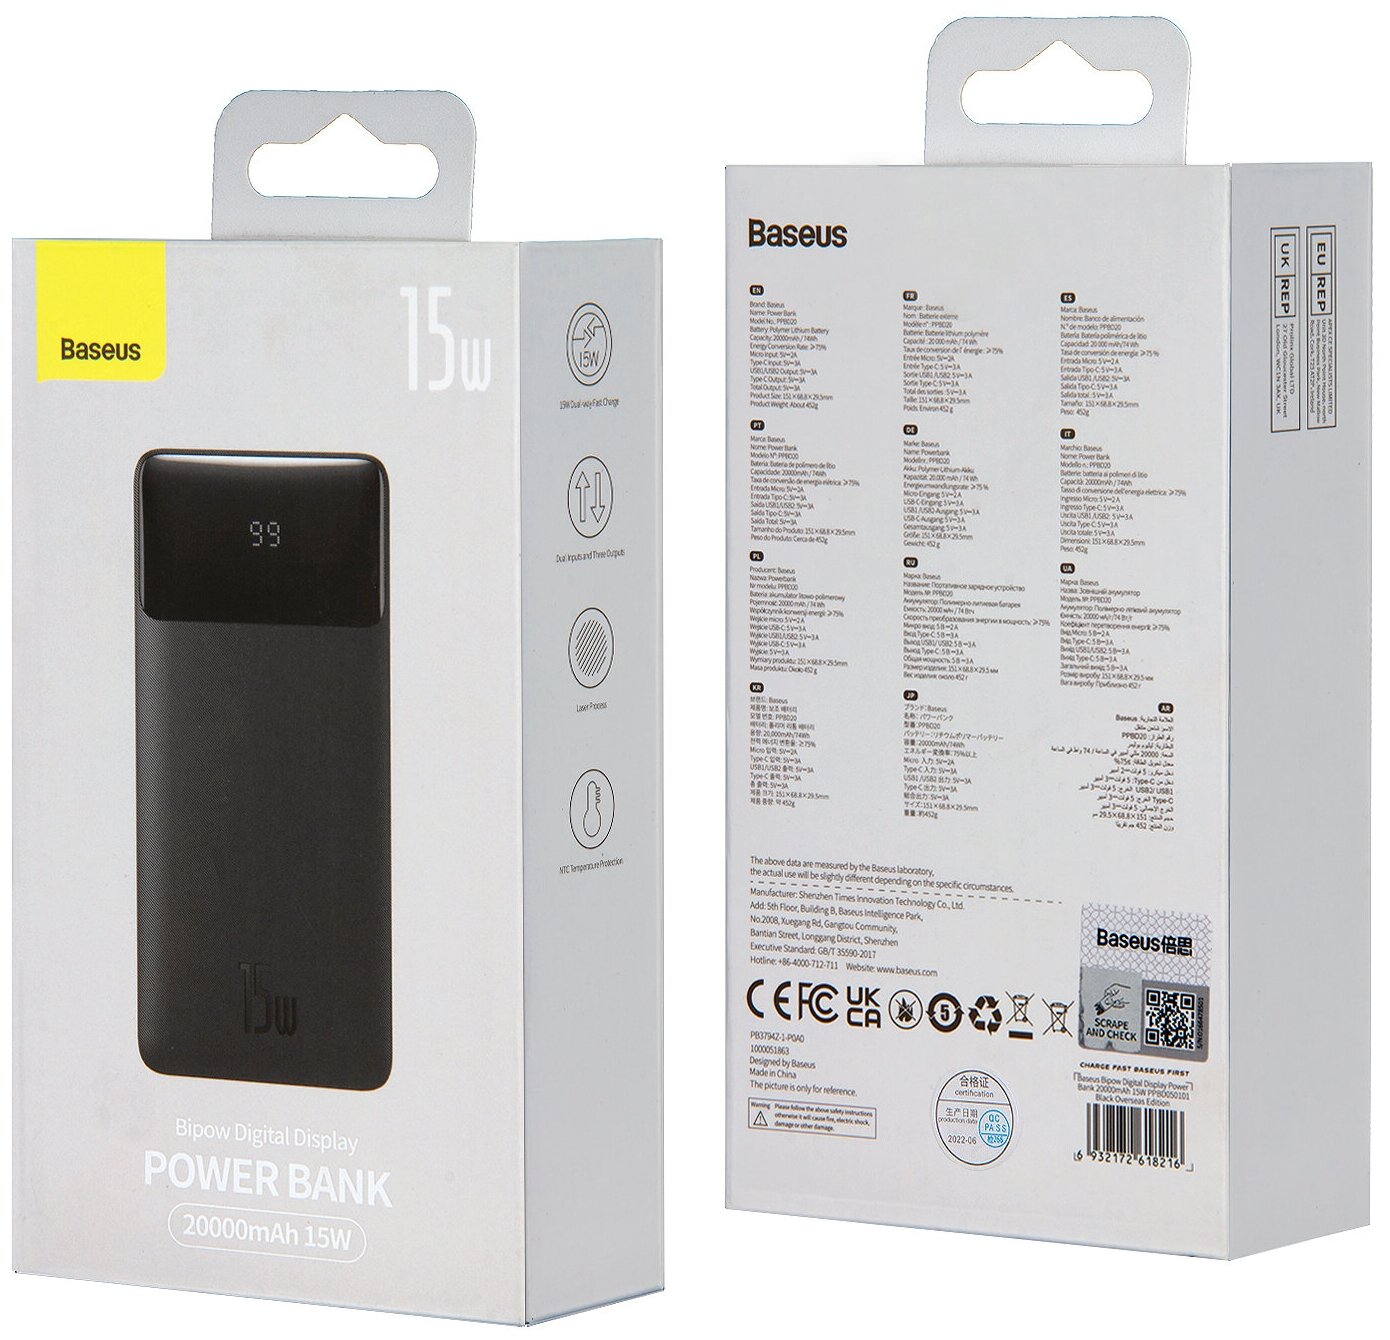 Портативный аккумулятор Baseus Bipow Digital Display Power bank 20000mAh 15W